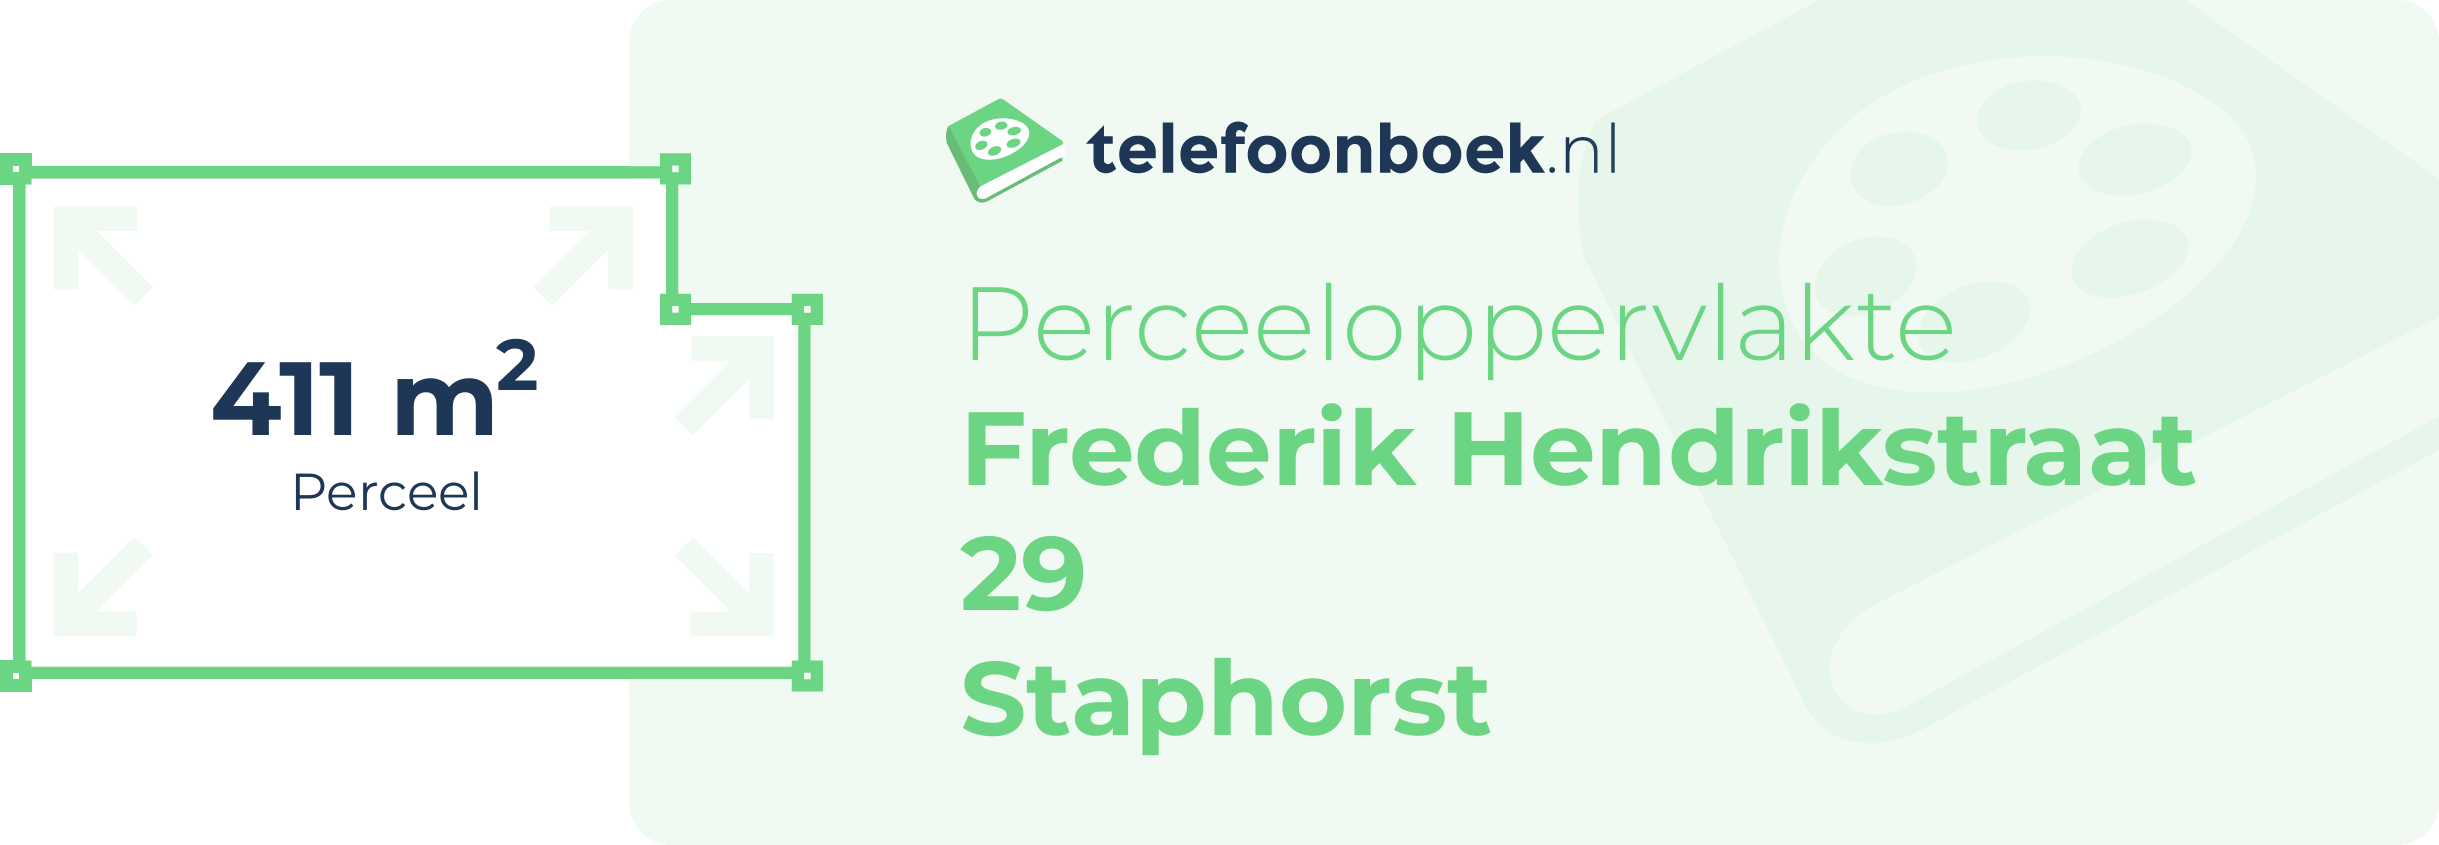 Perceeloppervlakte Frederik Hendrikstraat 29 Staphorst